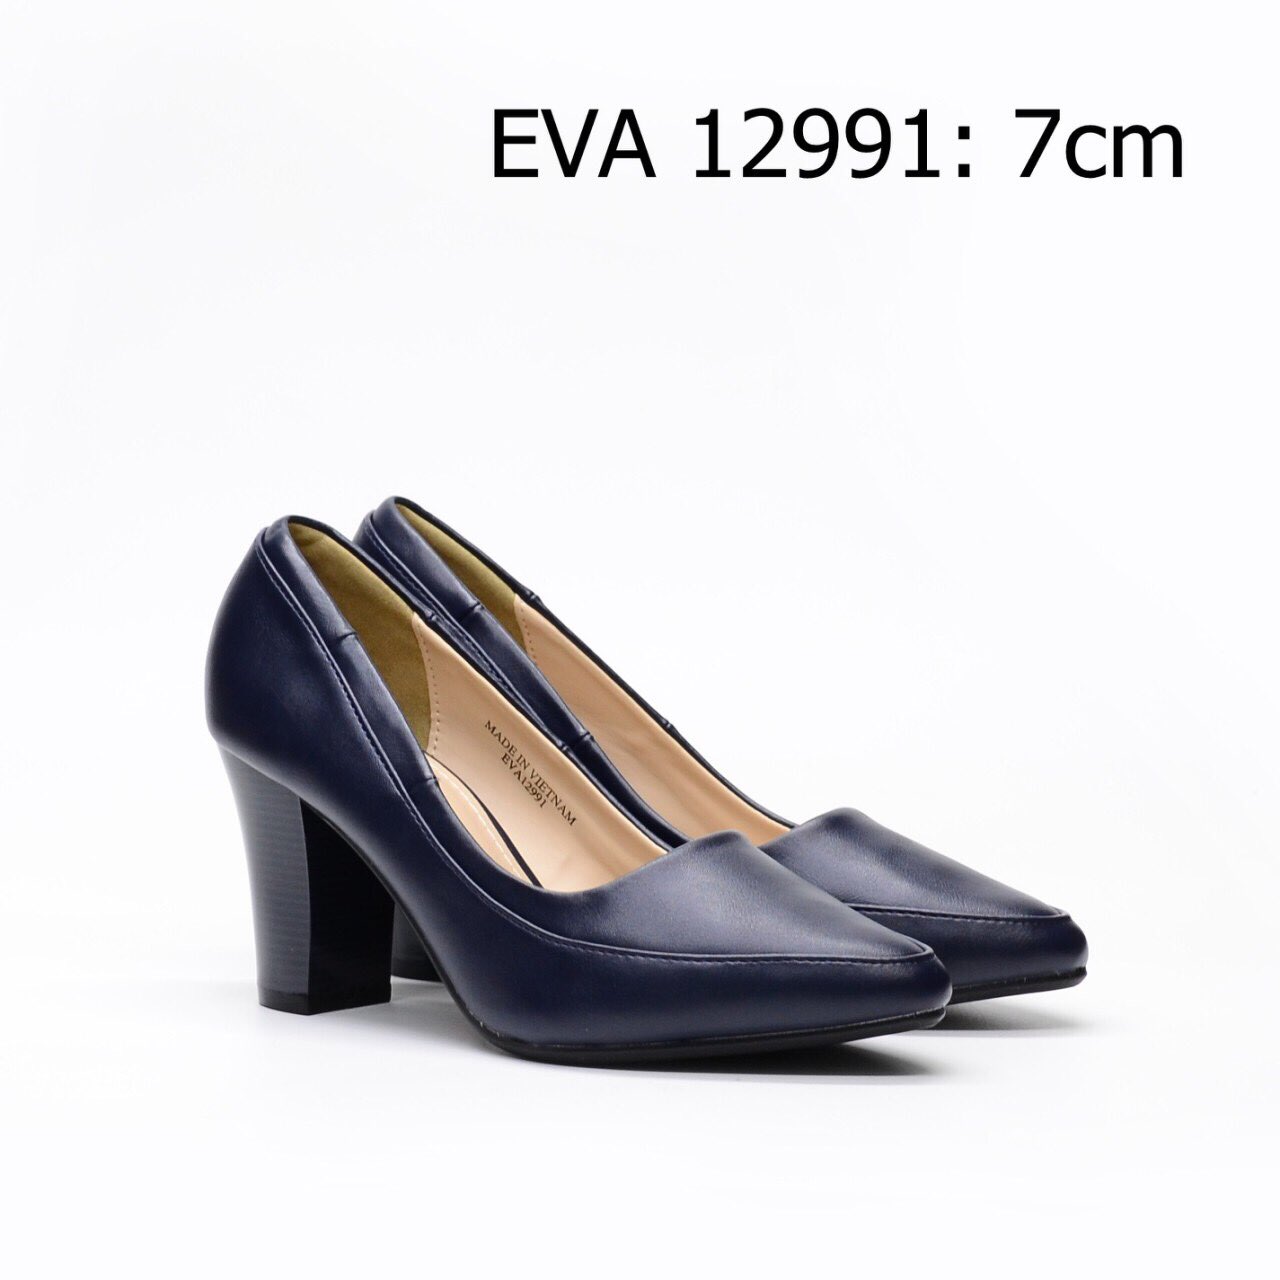 Giày bít mũi thanh lịch EVA12991 thiết kế đế vuông cao 7cm